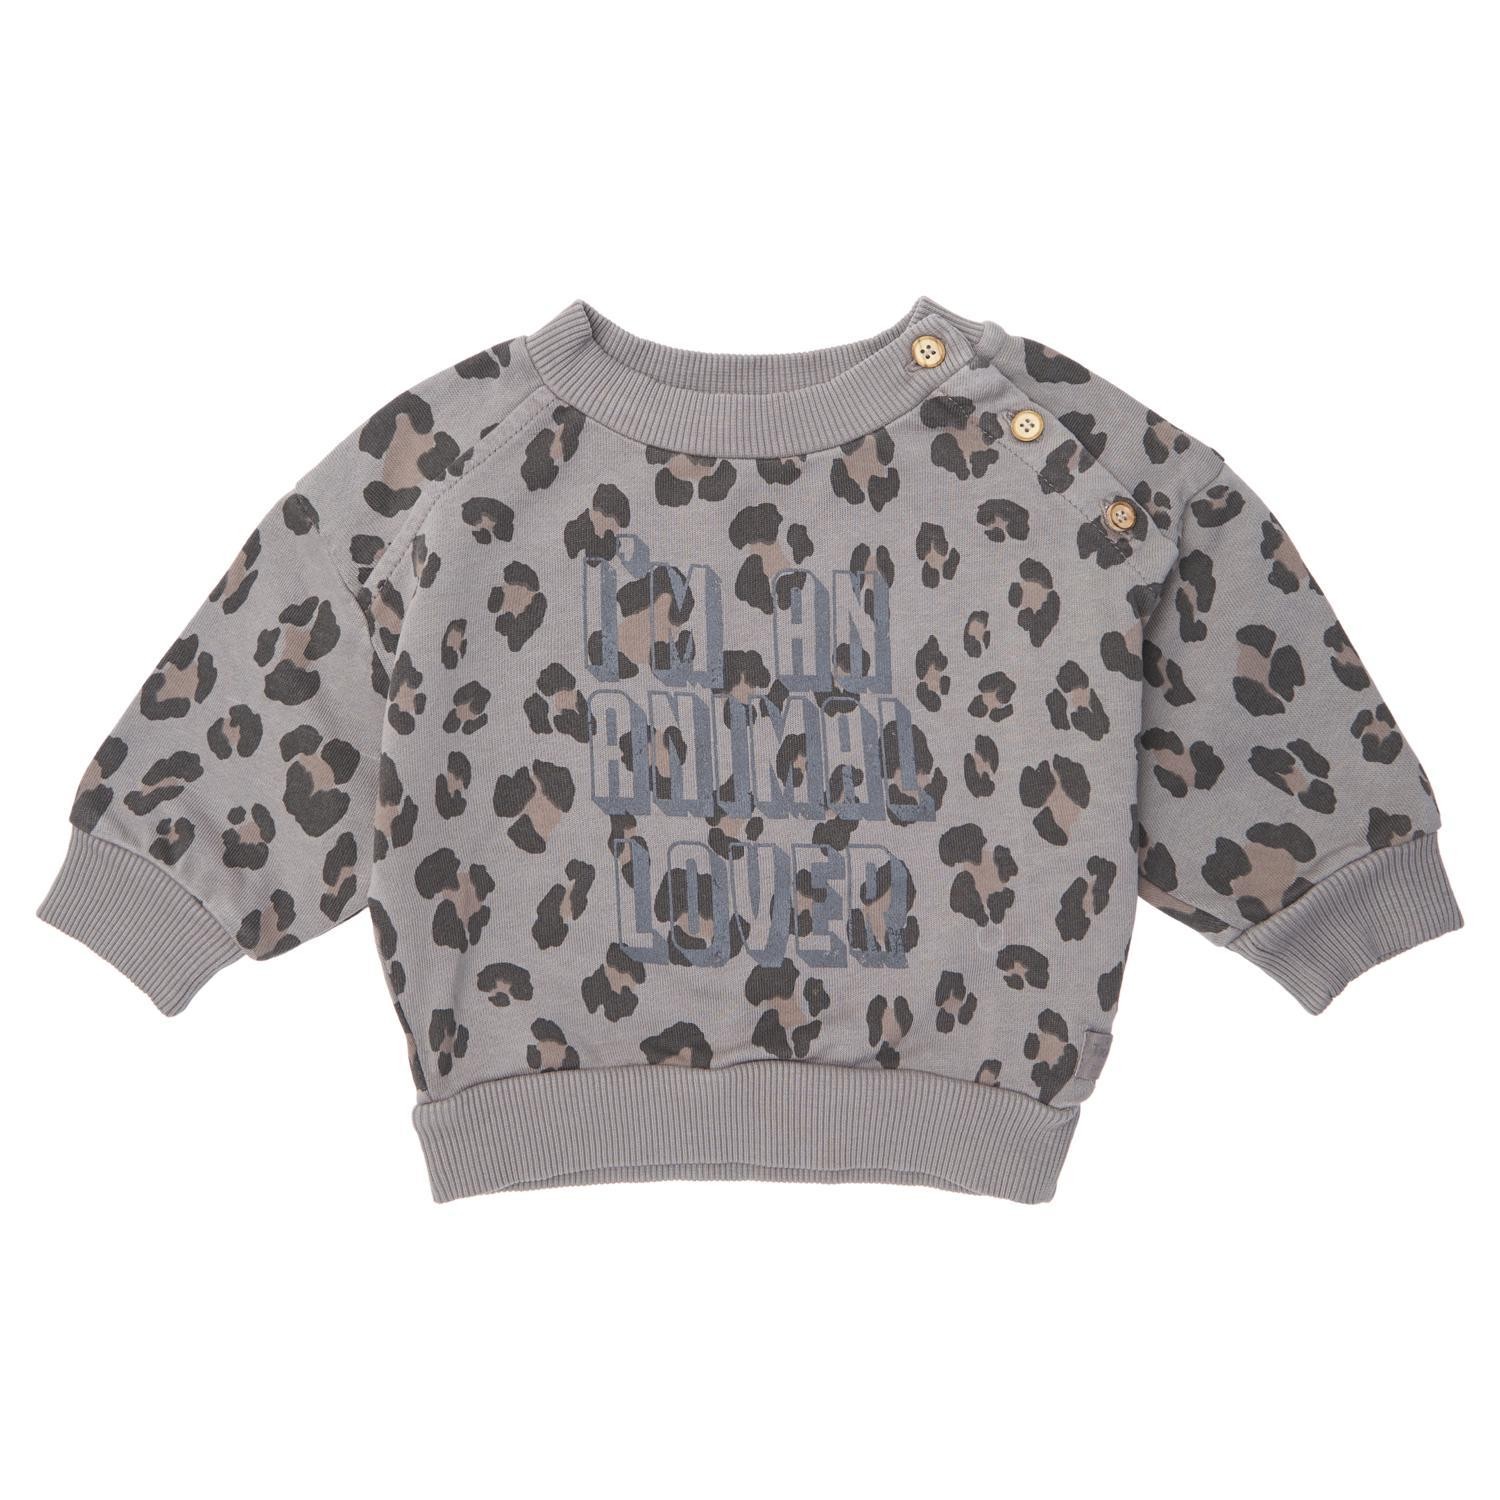 Baby animal print sweatshirt